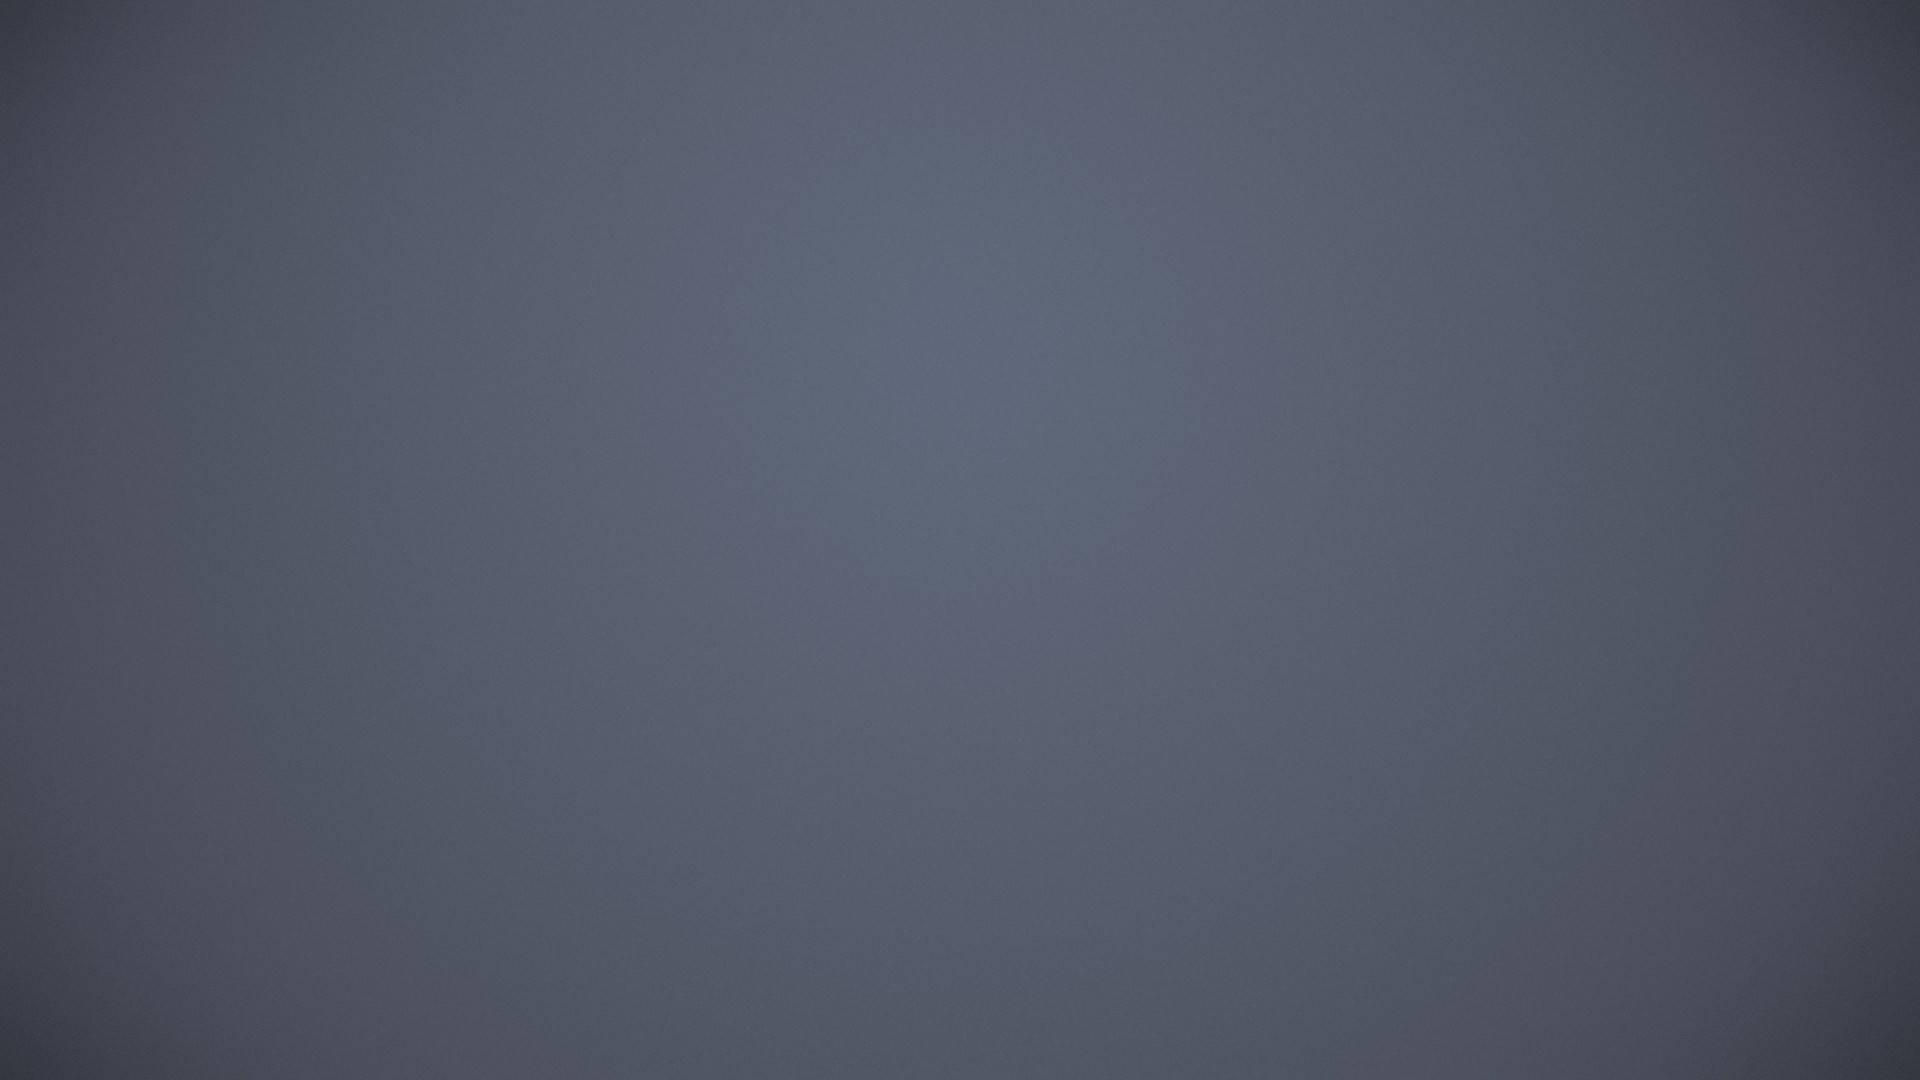 Bluish Solid Grey Background Background